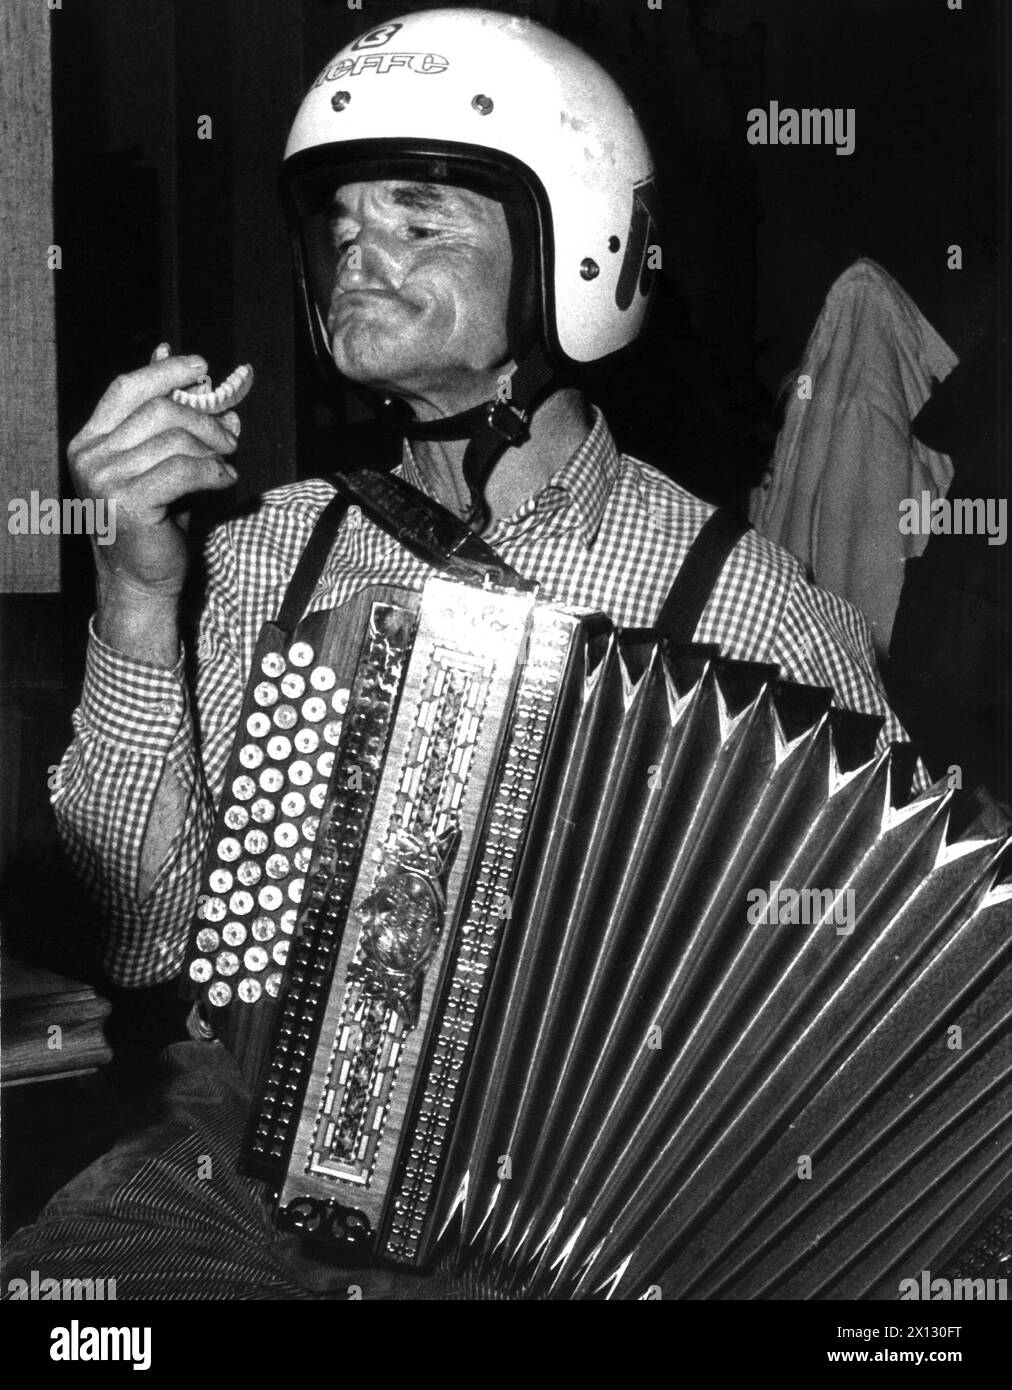 Lofer près de Salzbourg - un comédien local se produit le 28 novembre 1986. - 19861128 PD0010 - Rechteinfo : droits gérés (RM) Banque D'Images